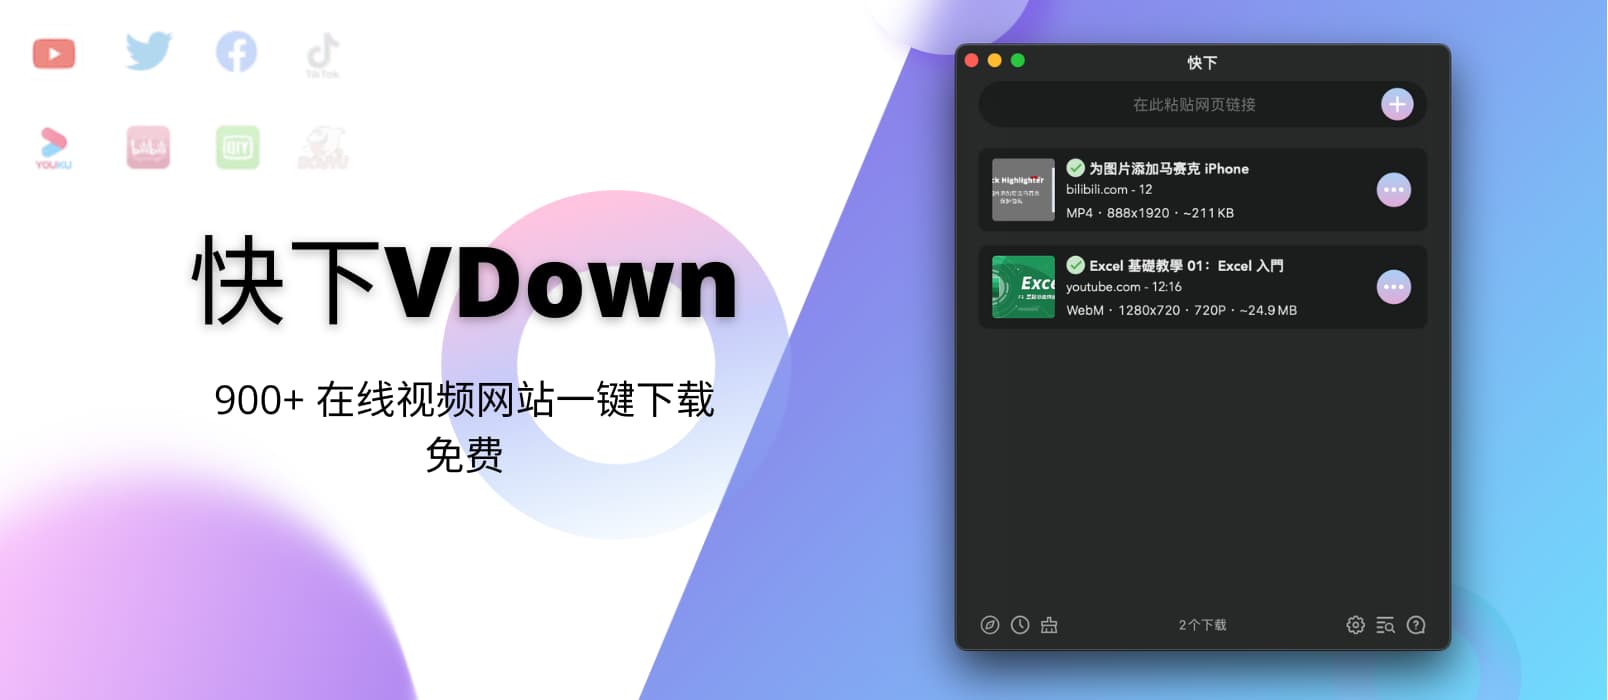 快下VDown - macOS 下的 Downie 对手来了：900+ 在线视频网站一键下载，免费